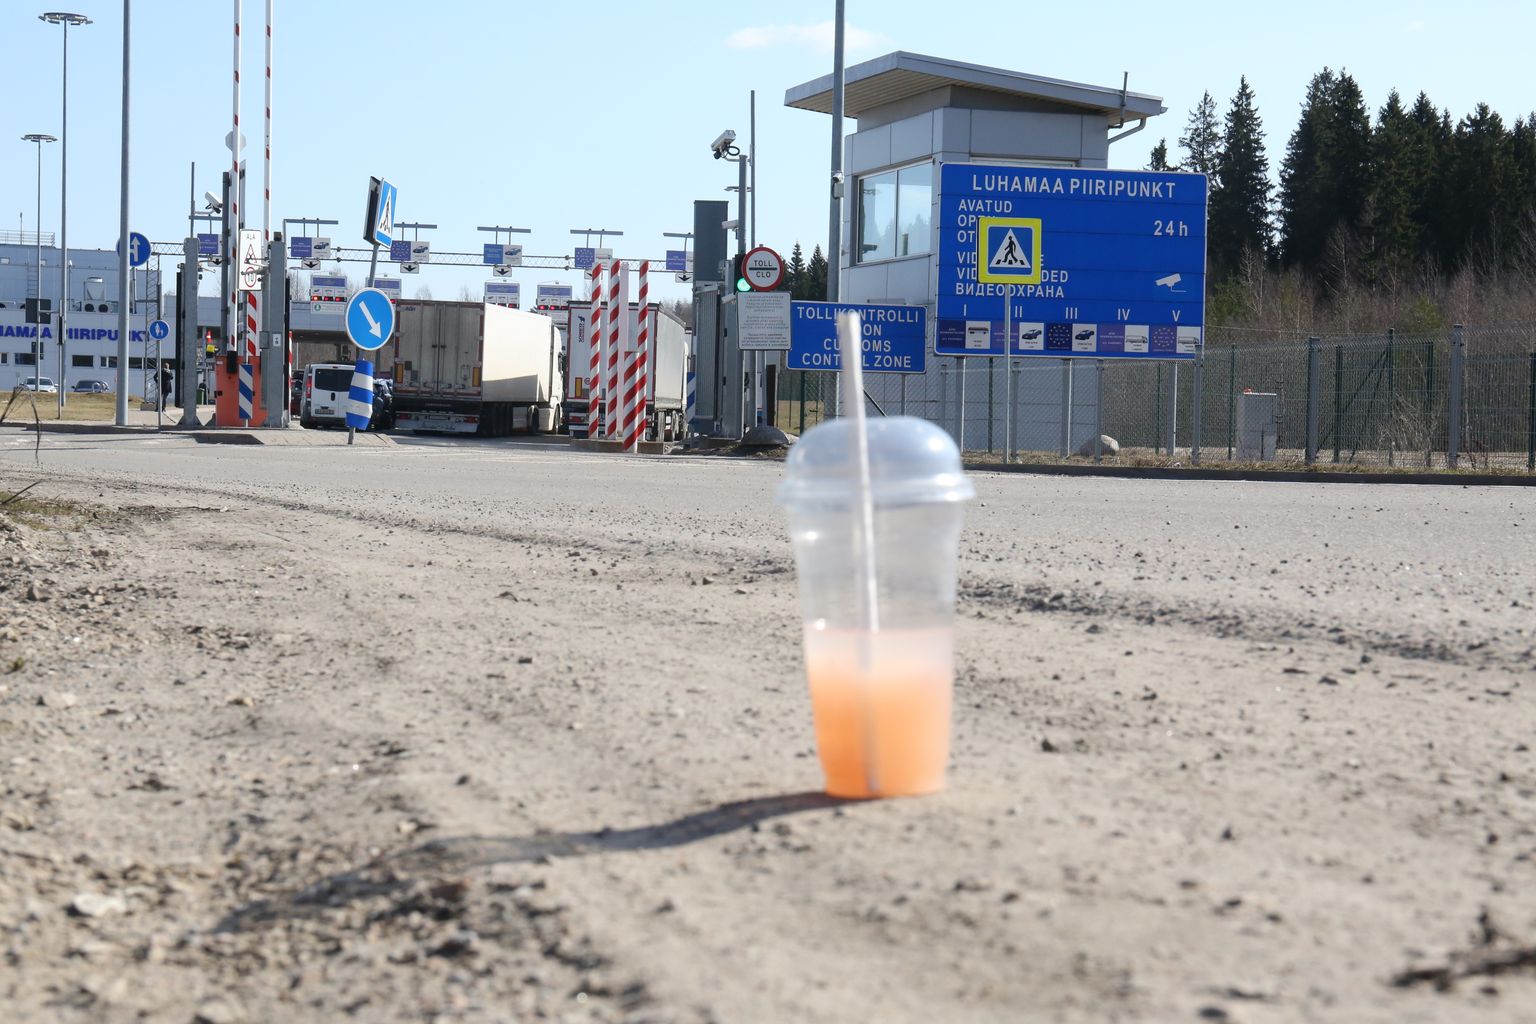 Через границу в районе Печор считают, что россияне в Эстонии не должны выезжать за пределы Выру. На снимке погранпереход Лухамаа в апреле этого года.